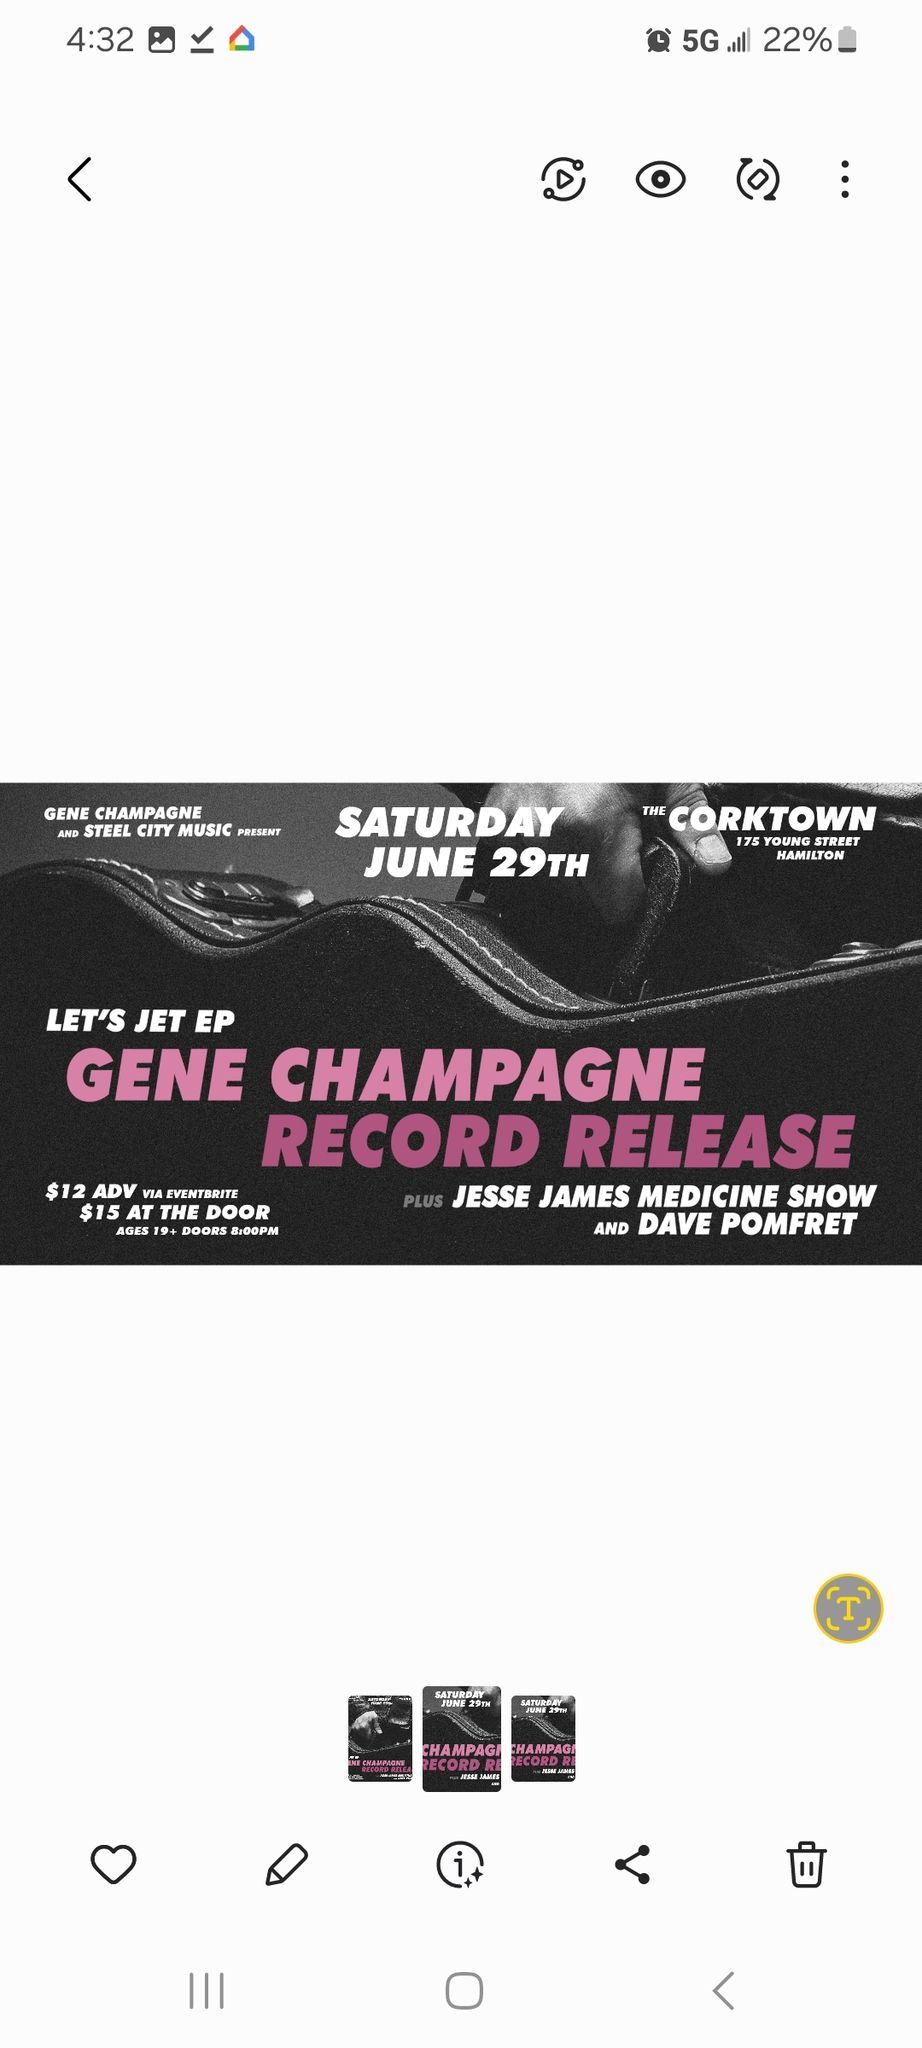 Gene Champagne Record Release